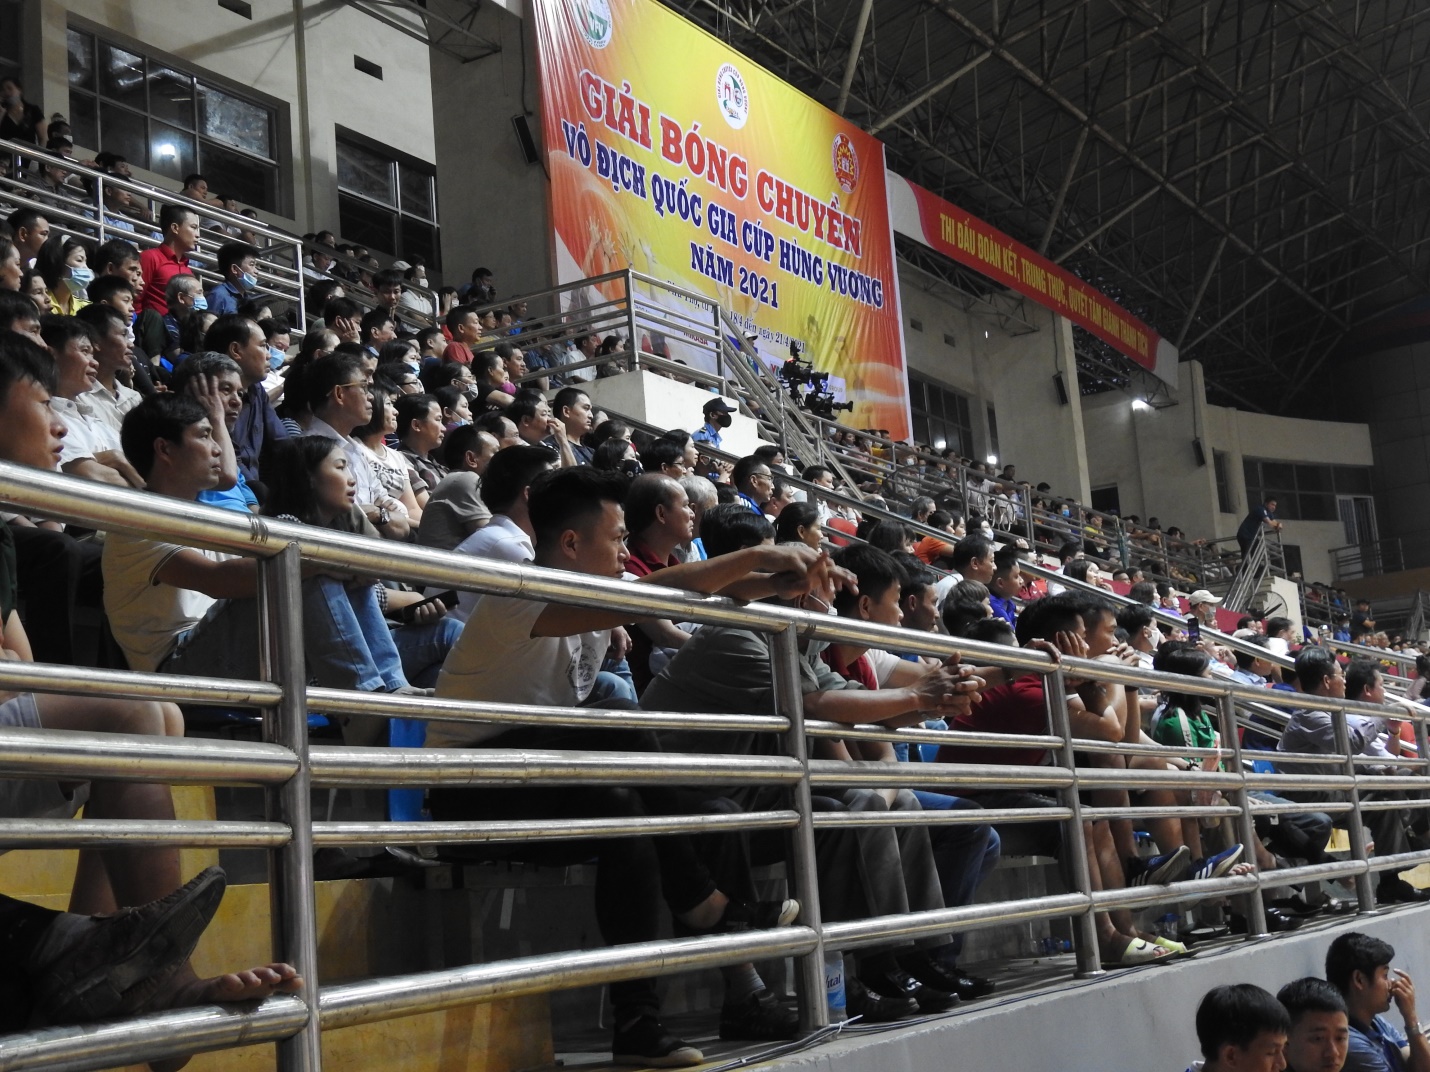 Phú Thọ: Khai mạc giải bóng chuyền vô địch Quốc gia - Cúp Hùng Vương 2021 - Ảnh 6.